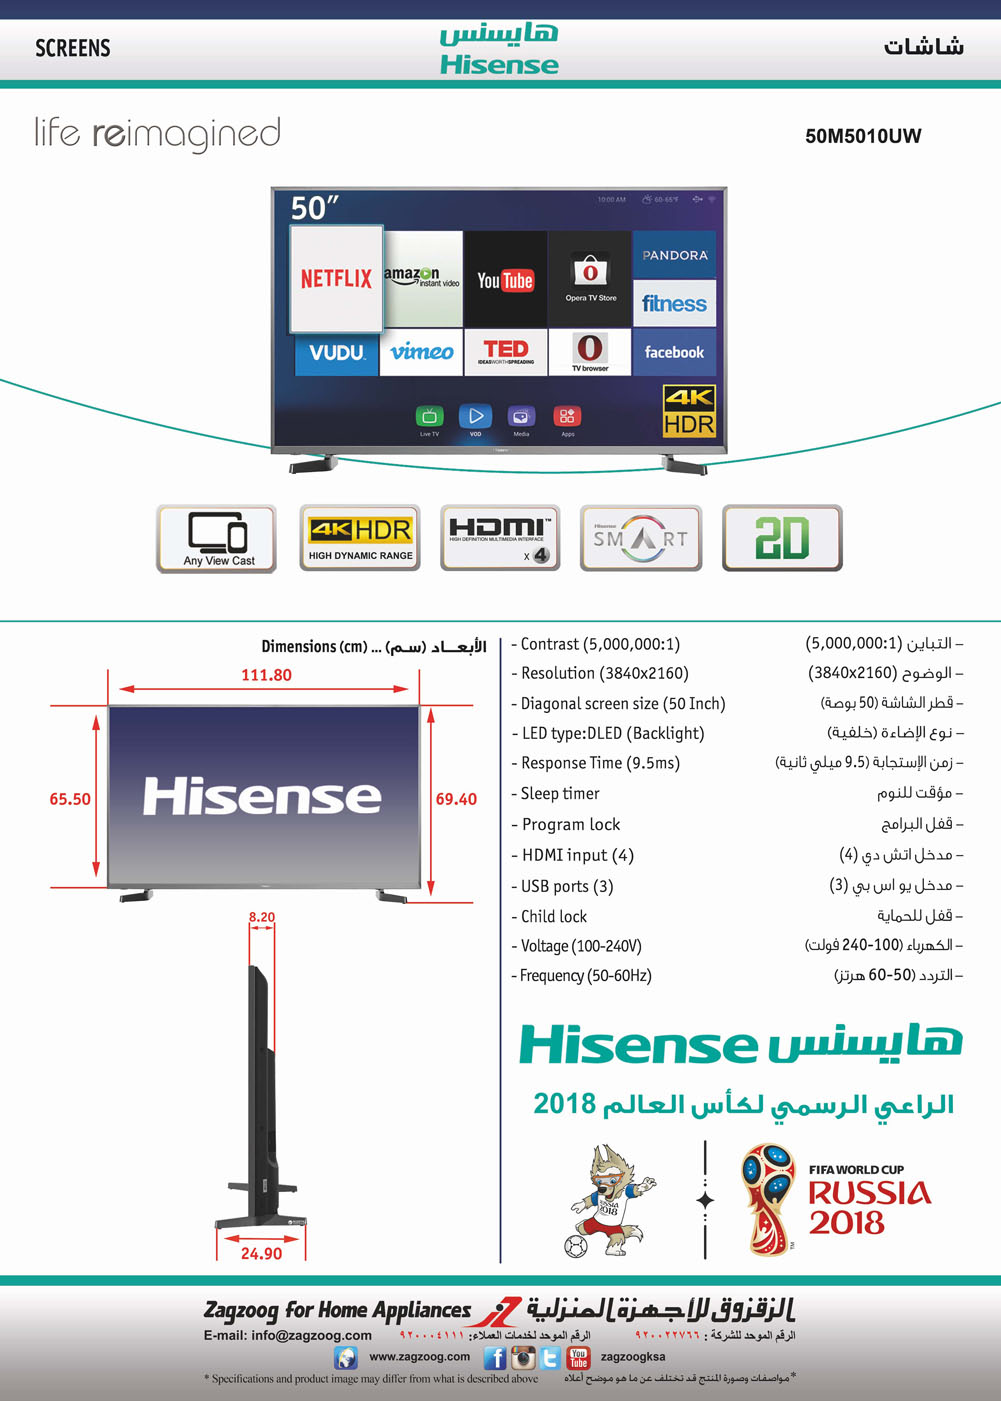 Hisense 50"DLED/4K HDR/SMRT/UTUBE/NTFLX